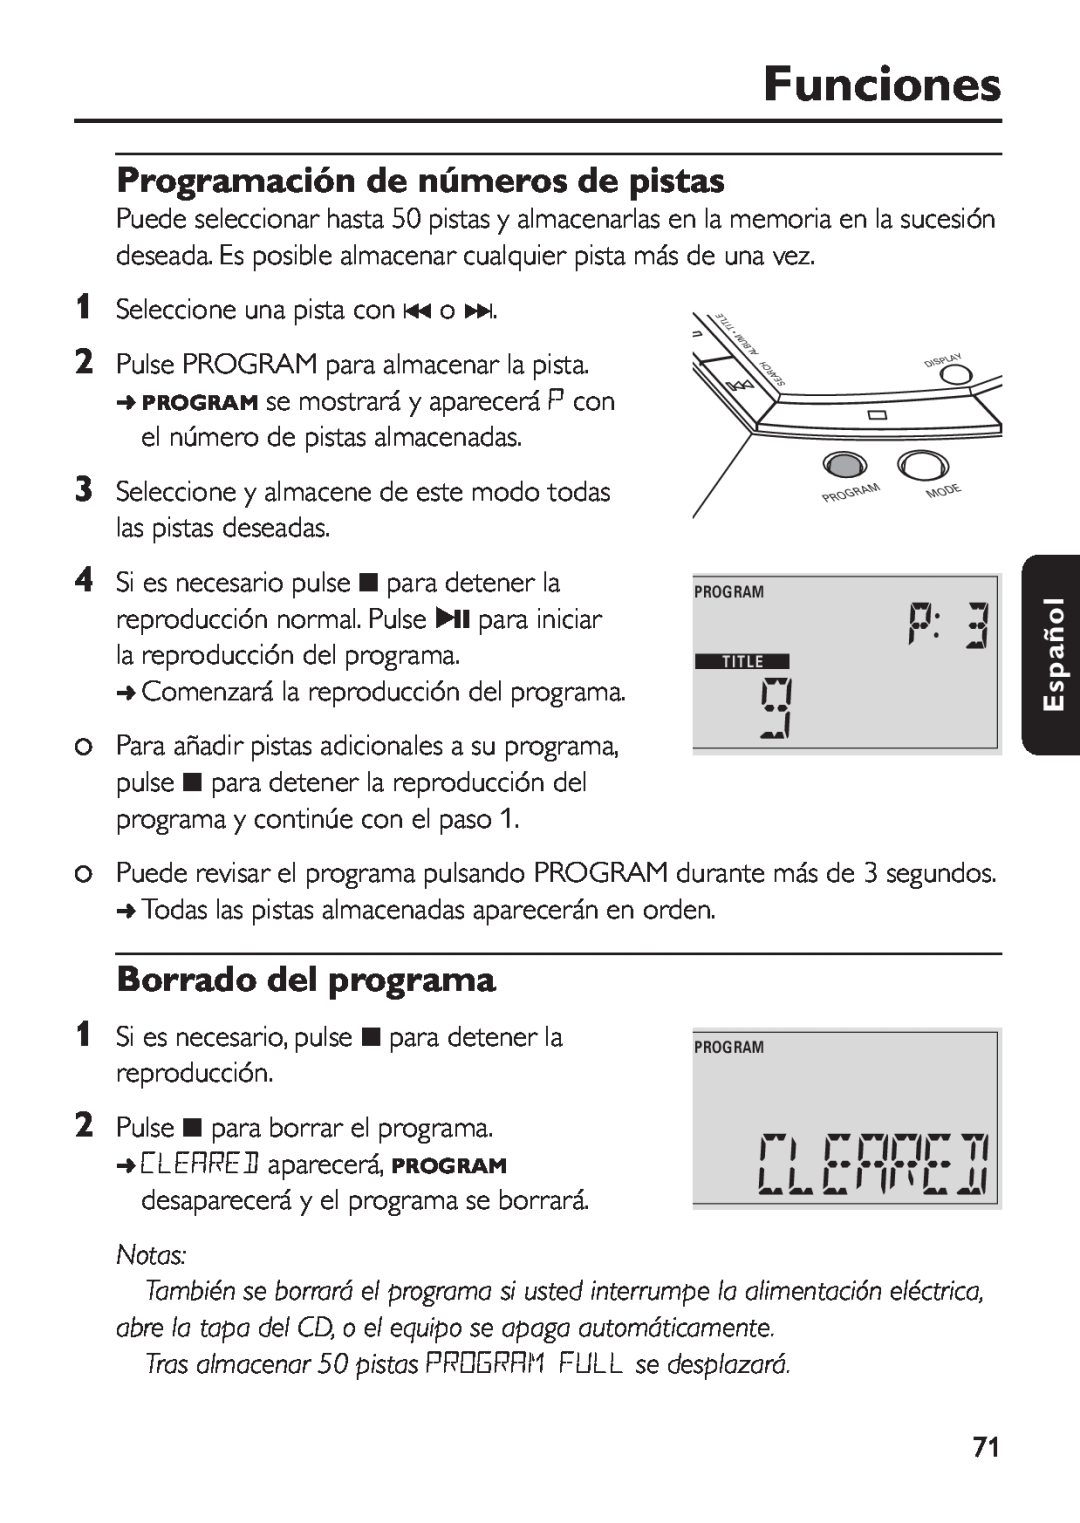 Philips EXP 501/00 manual Funciones, Programación de números de pistas, Borrado del programa, Notas, Español 